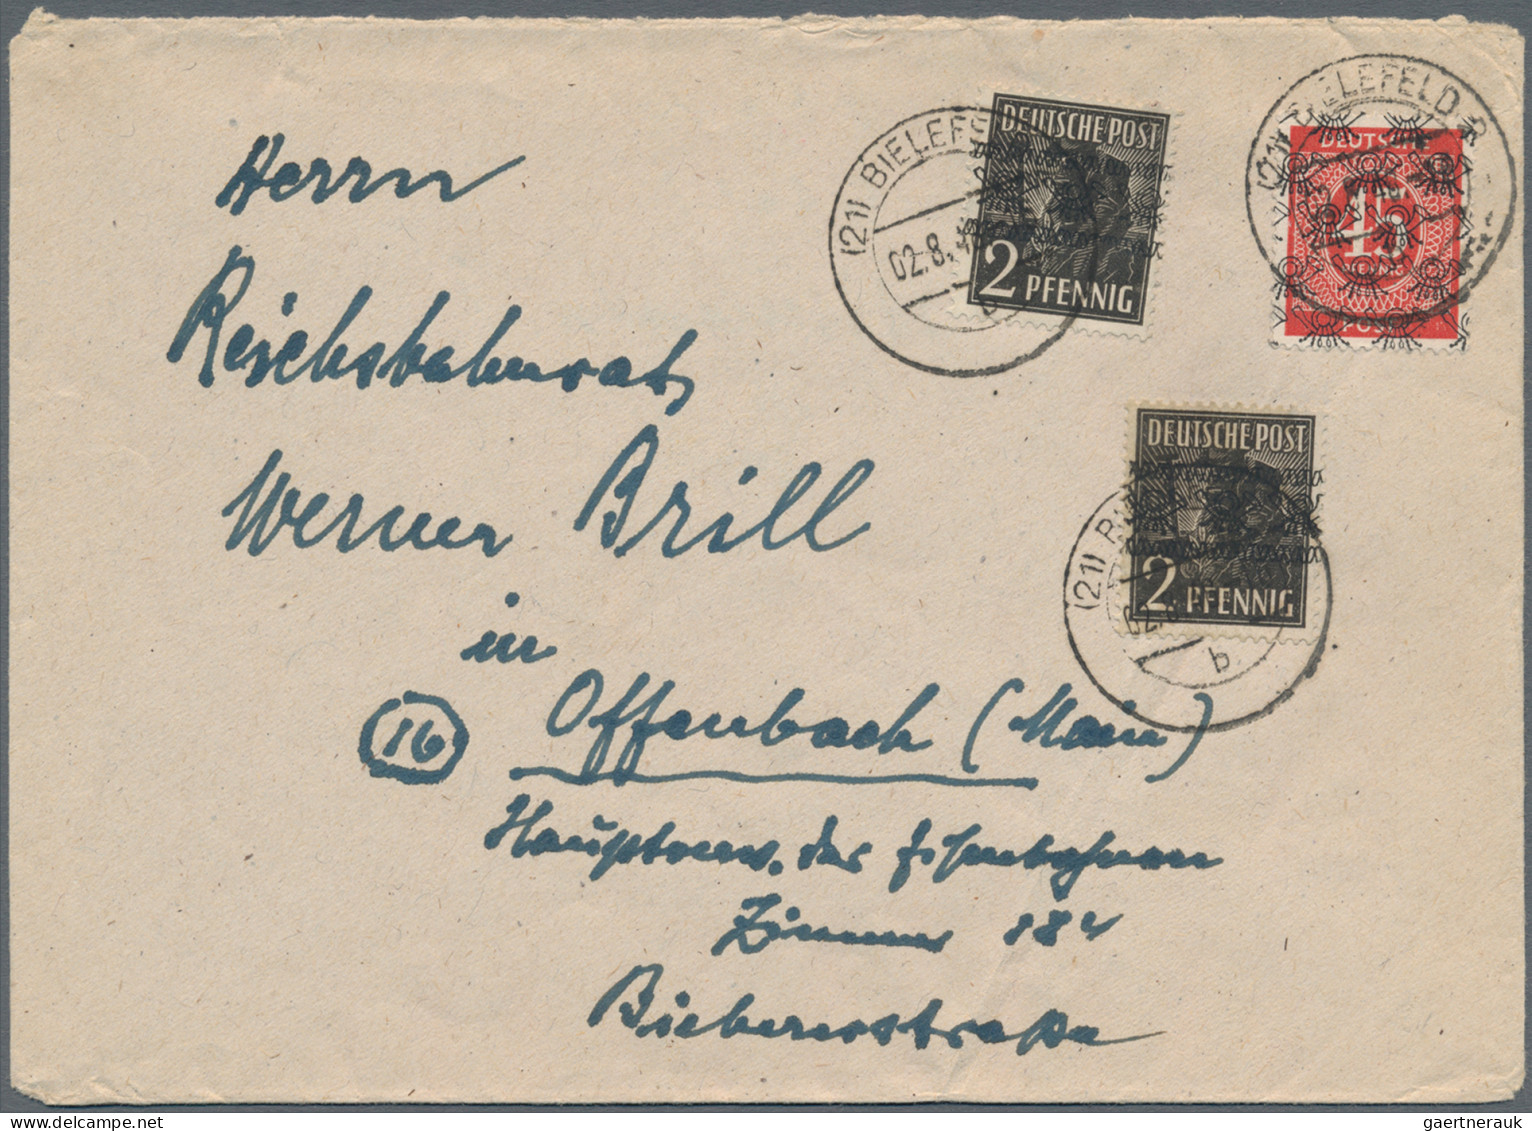 Bizone: 1948, Band/Netz auf Arbeiter/Ziffern, Partie von ca. 67 Briefen und Kart